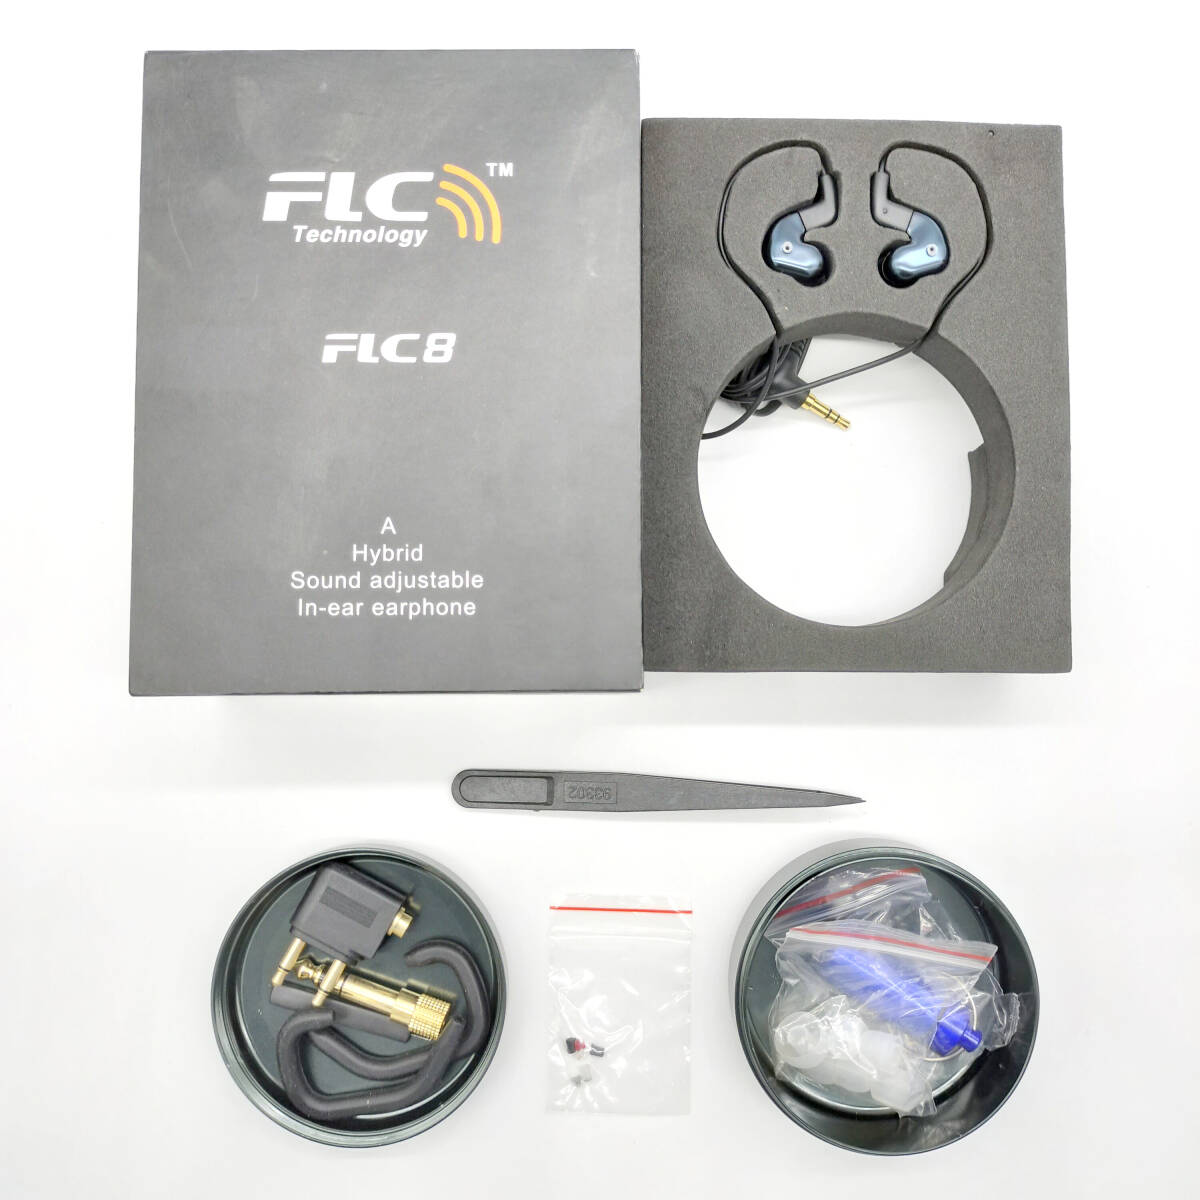 【アクセサリー一式付き】FLC Technology FLC8 自分好みのカスタマイズ可能な有線イヤホン【ジャンク品】《管理番号：2404D-11》の画像2